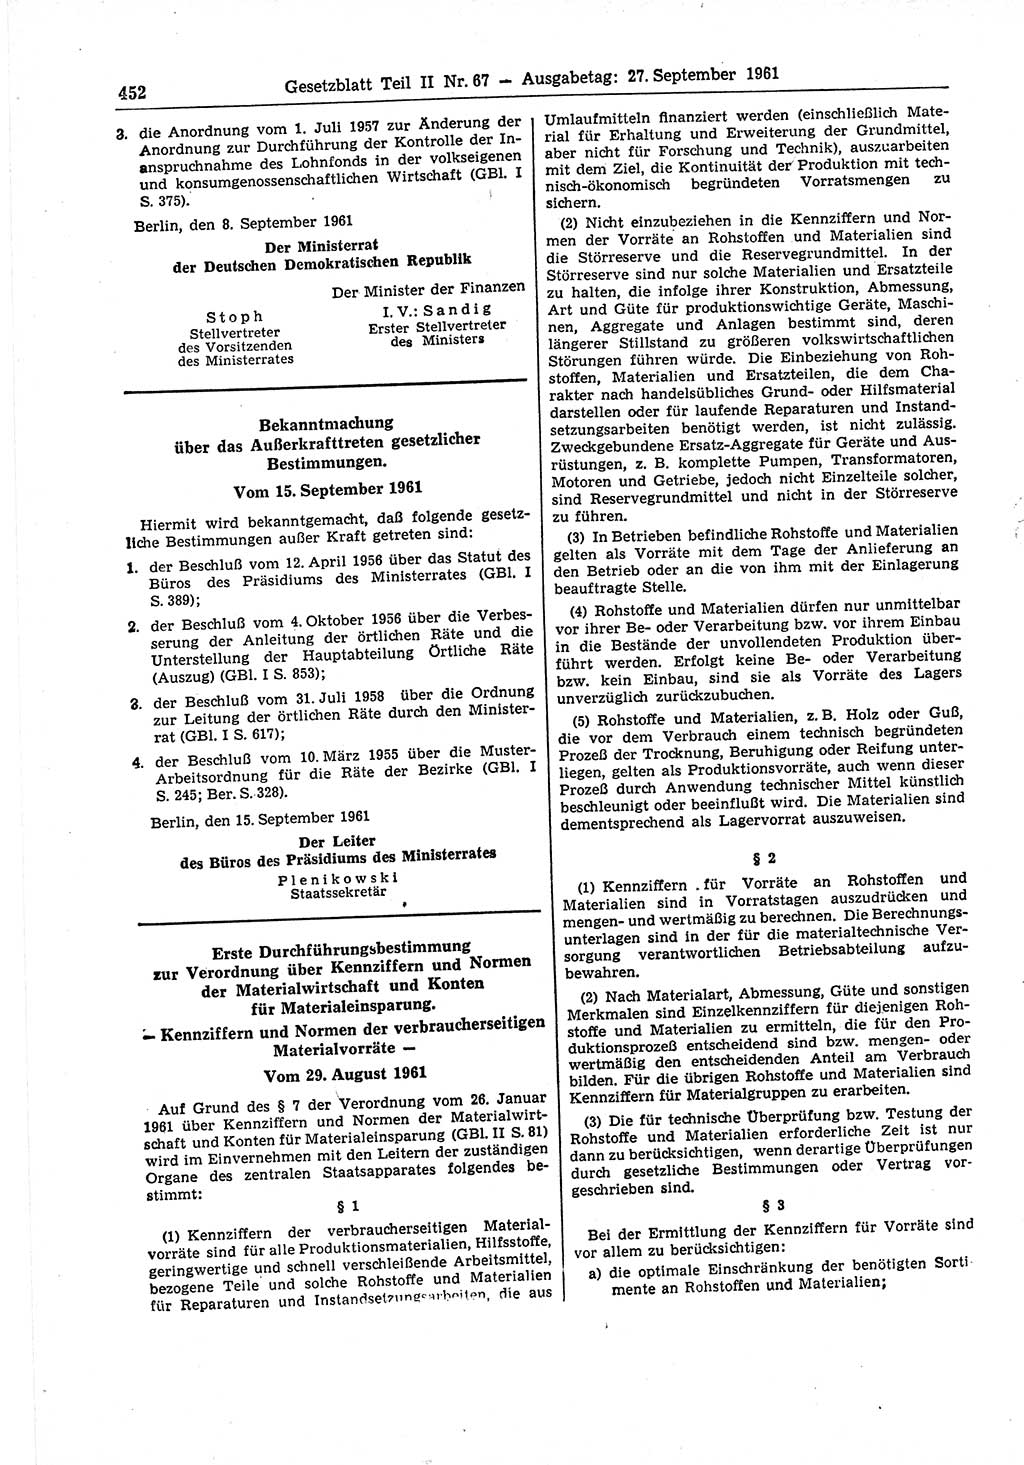 Gesetzblatt (GBl.) der Deutschen Demokratischen Republik (DDR) Teil ⅠⅠ 1961, Seite 452 (GBl. DDR ⅠⅠ 1961, S. 452)